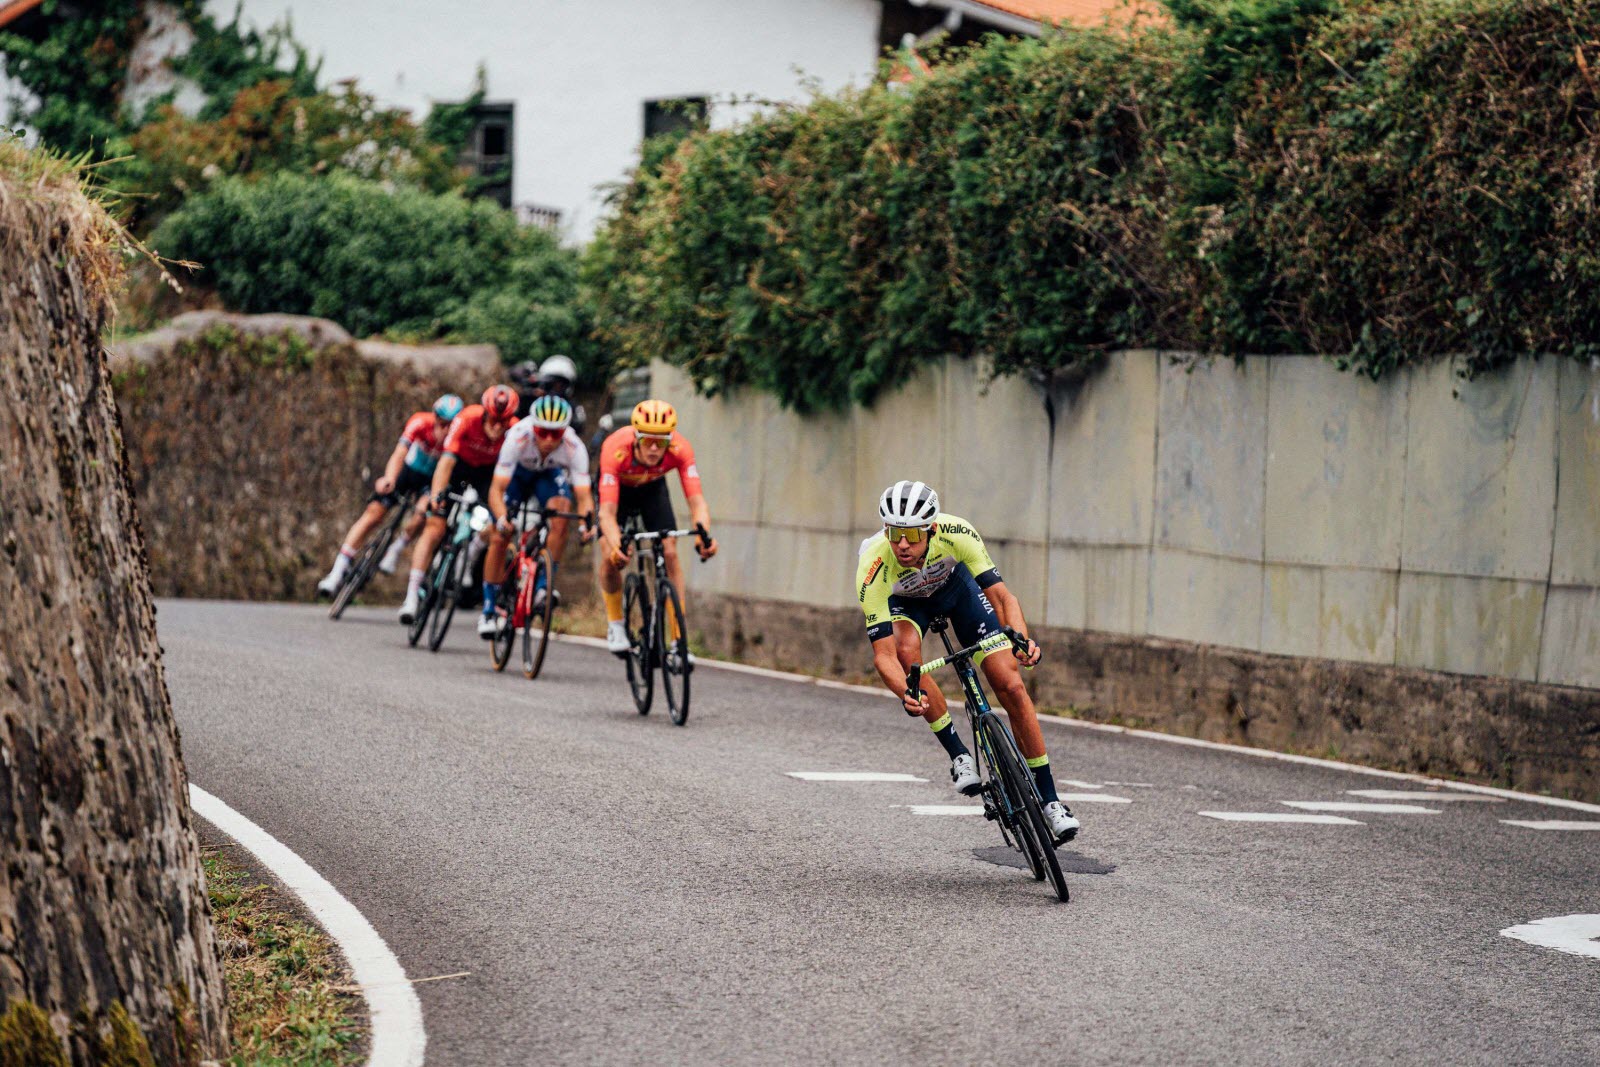 Tour de France : la colère de Calmejane suite aux punaises jetées sur la route "bande d'abrutis"